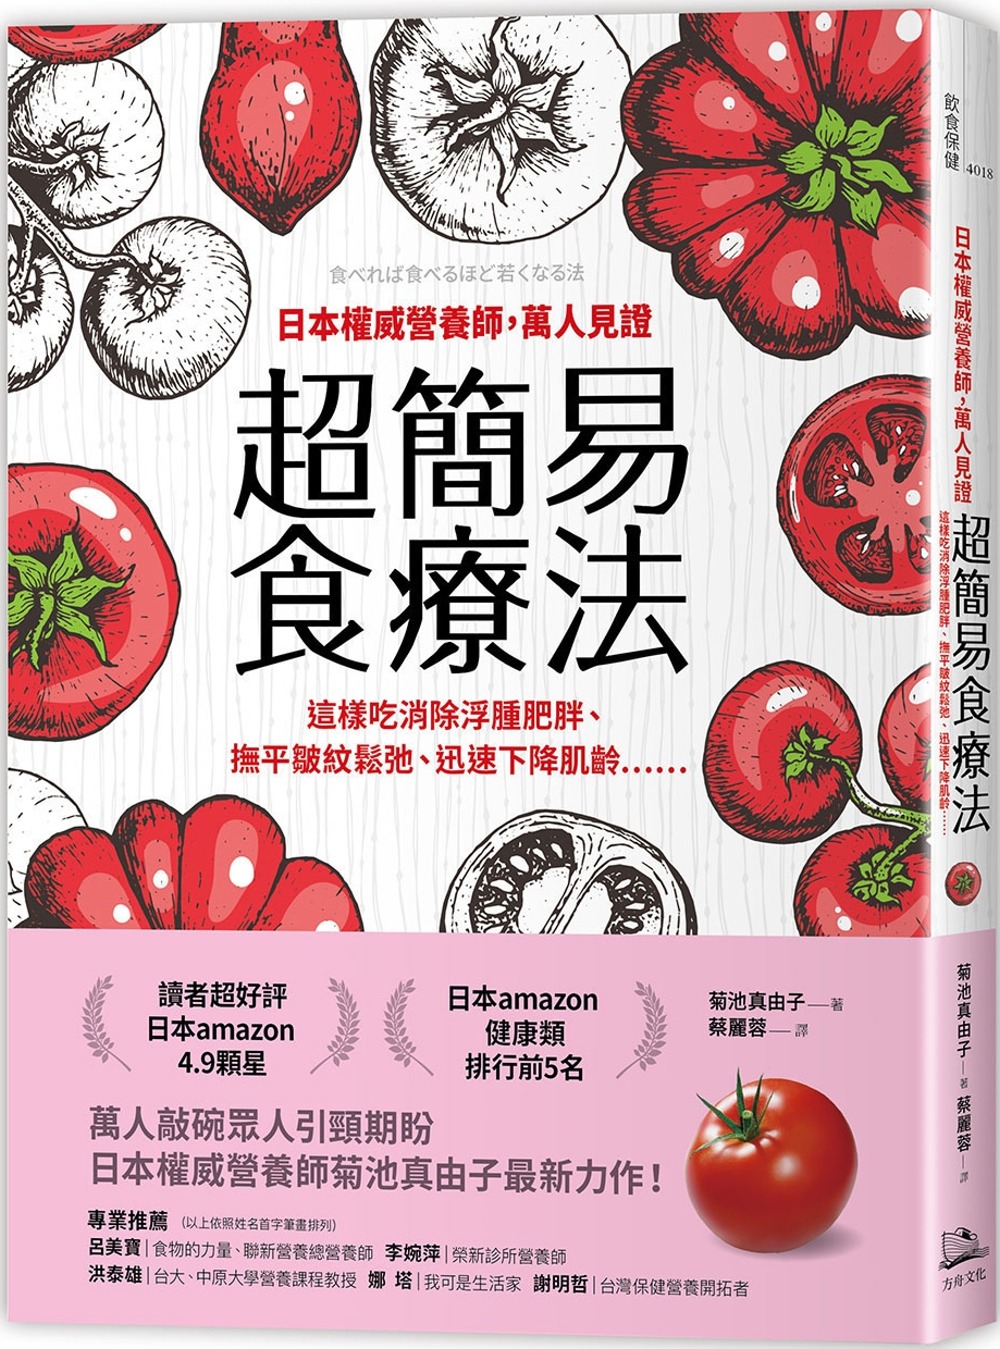 日本權威營養師，萬人見證超簡易食療法【經典暢銷版】： 這樣吃消除浮腫肥胖、撫平皺紋鬆弛、迅速下降肌齡……